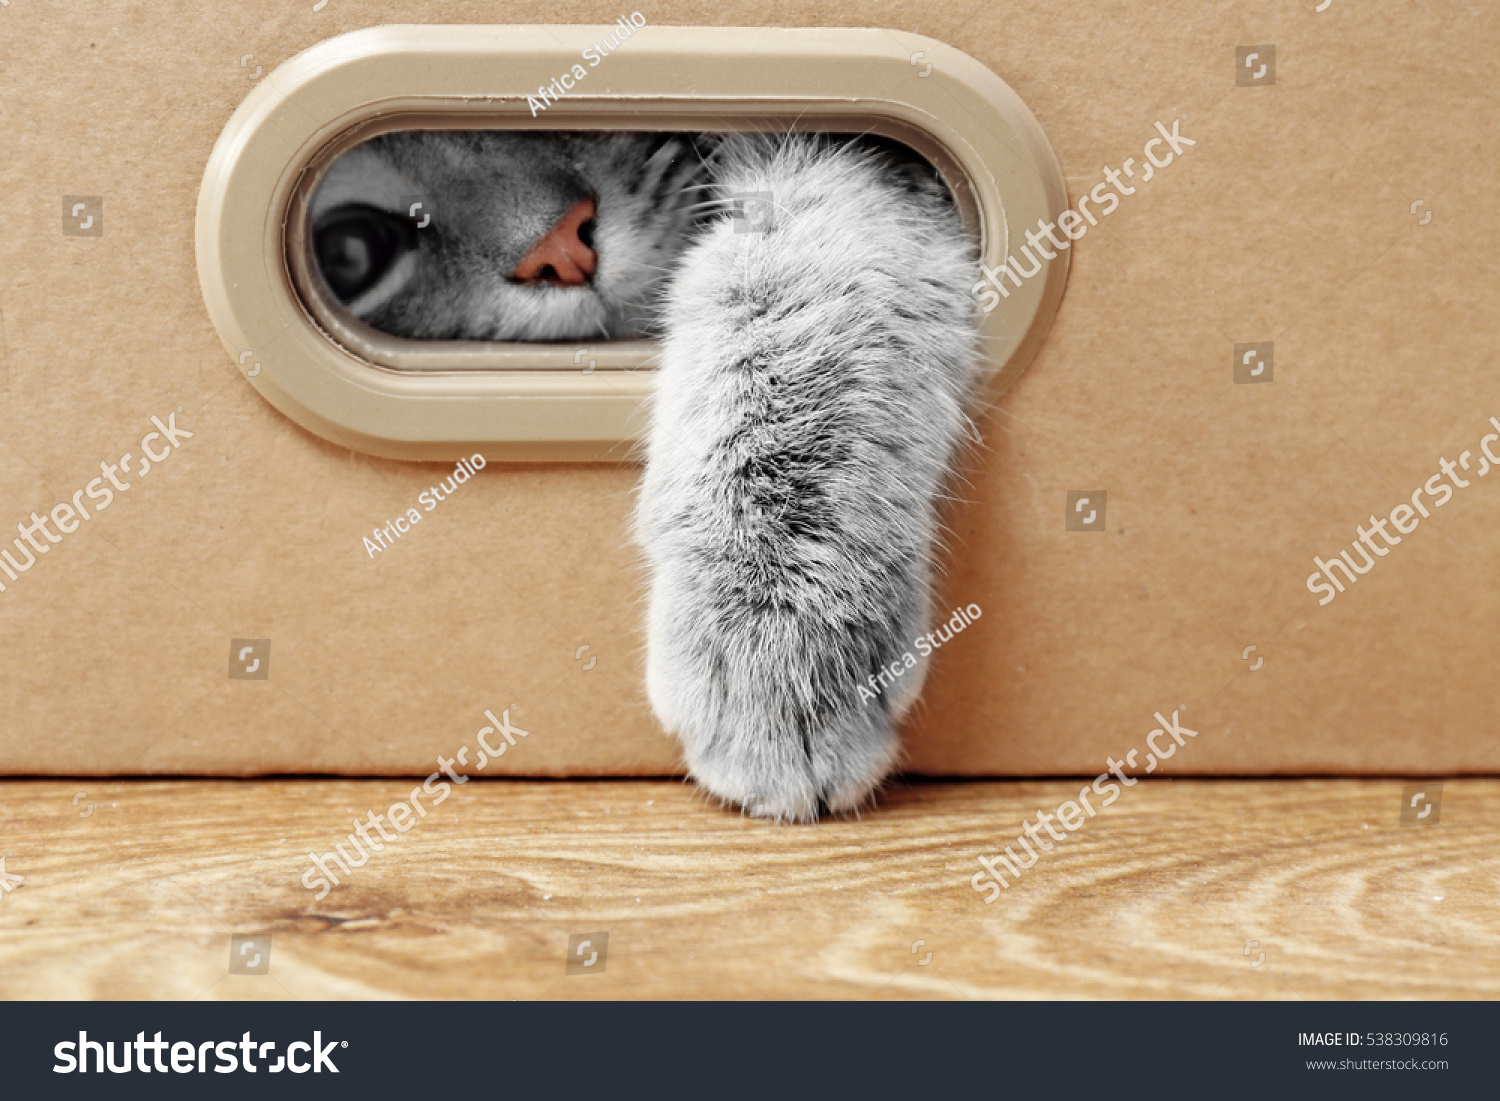 Cute cat in cardboard box #538309816